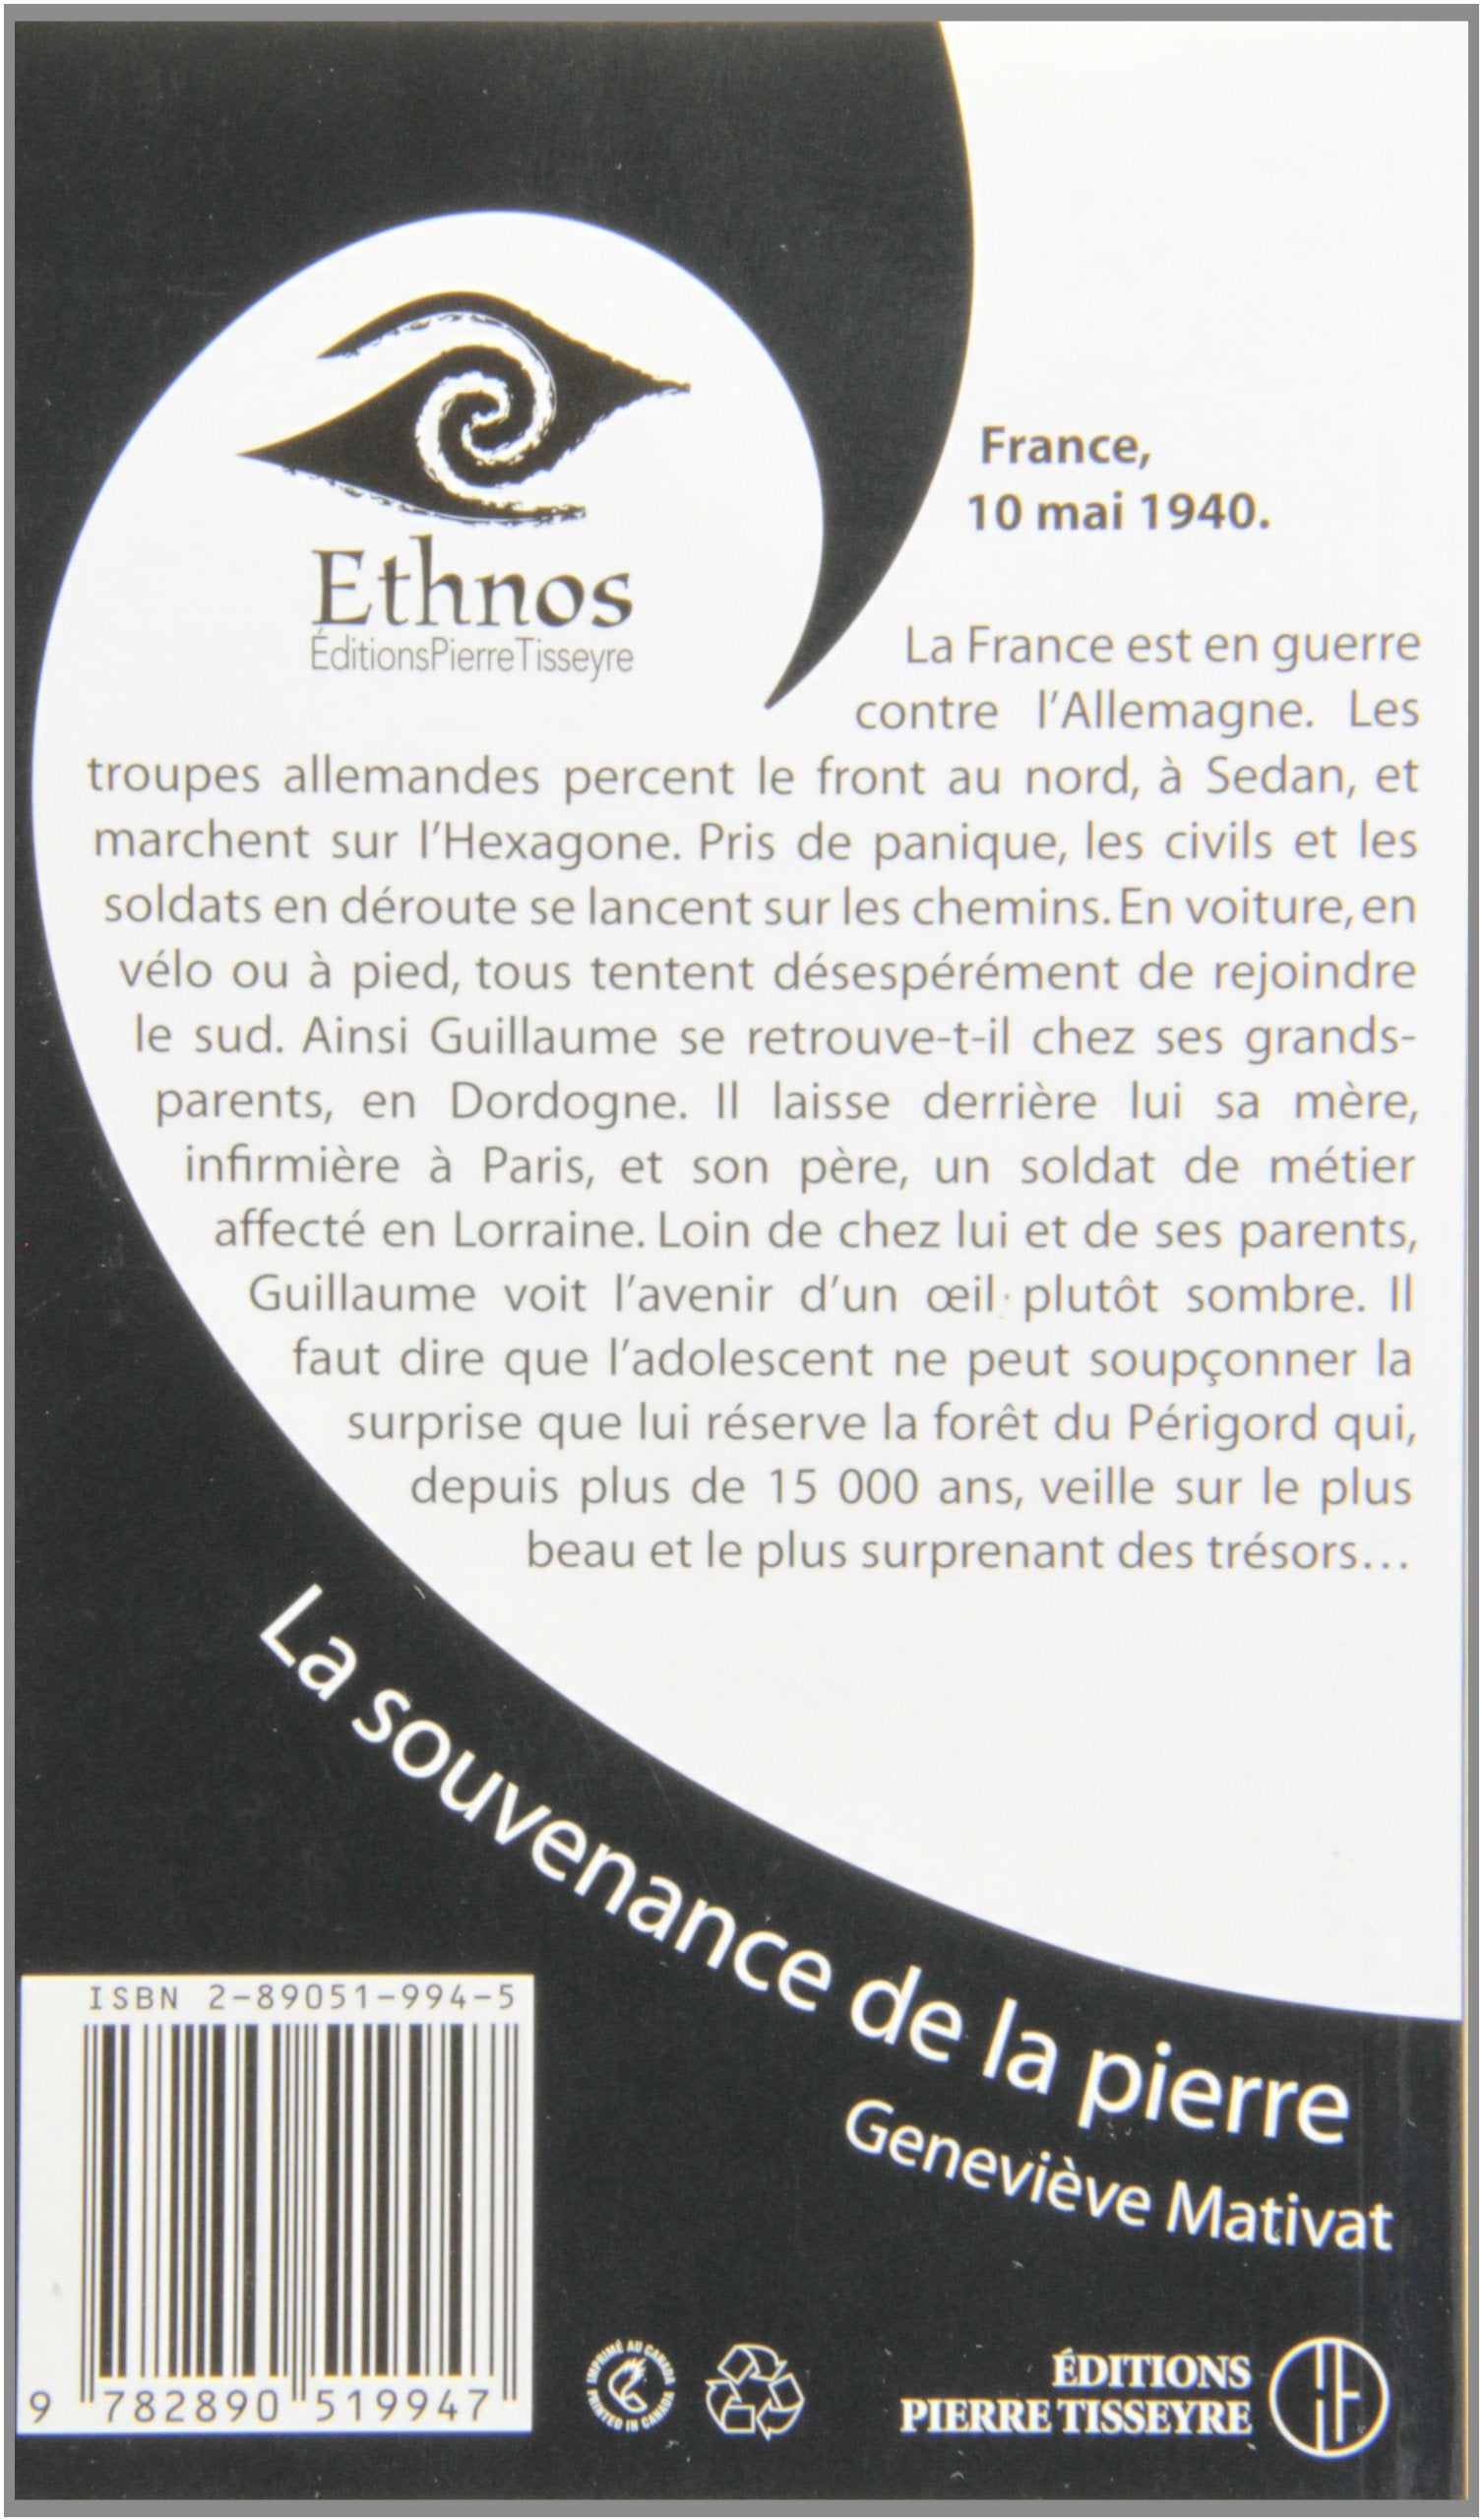 Ethnos # 4 : La souvenance de la pierre (Geneviève Mativat)